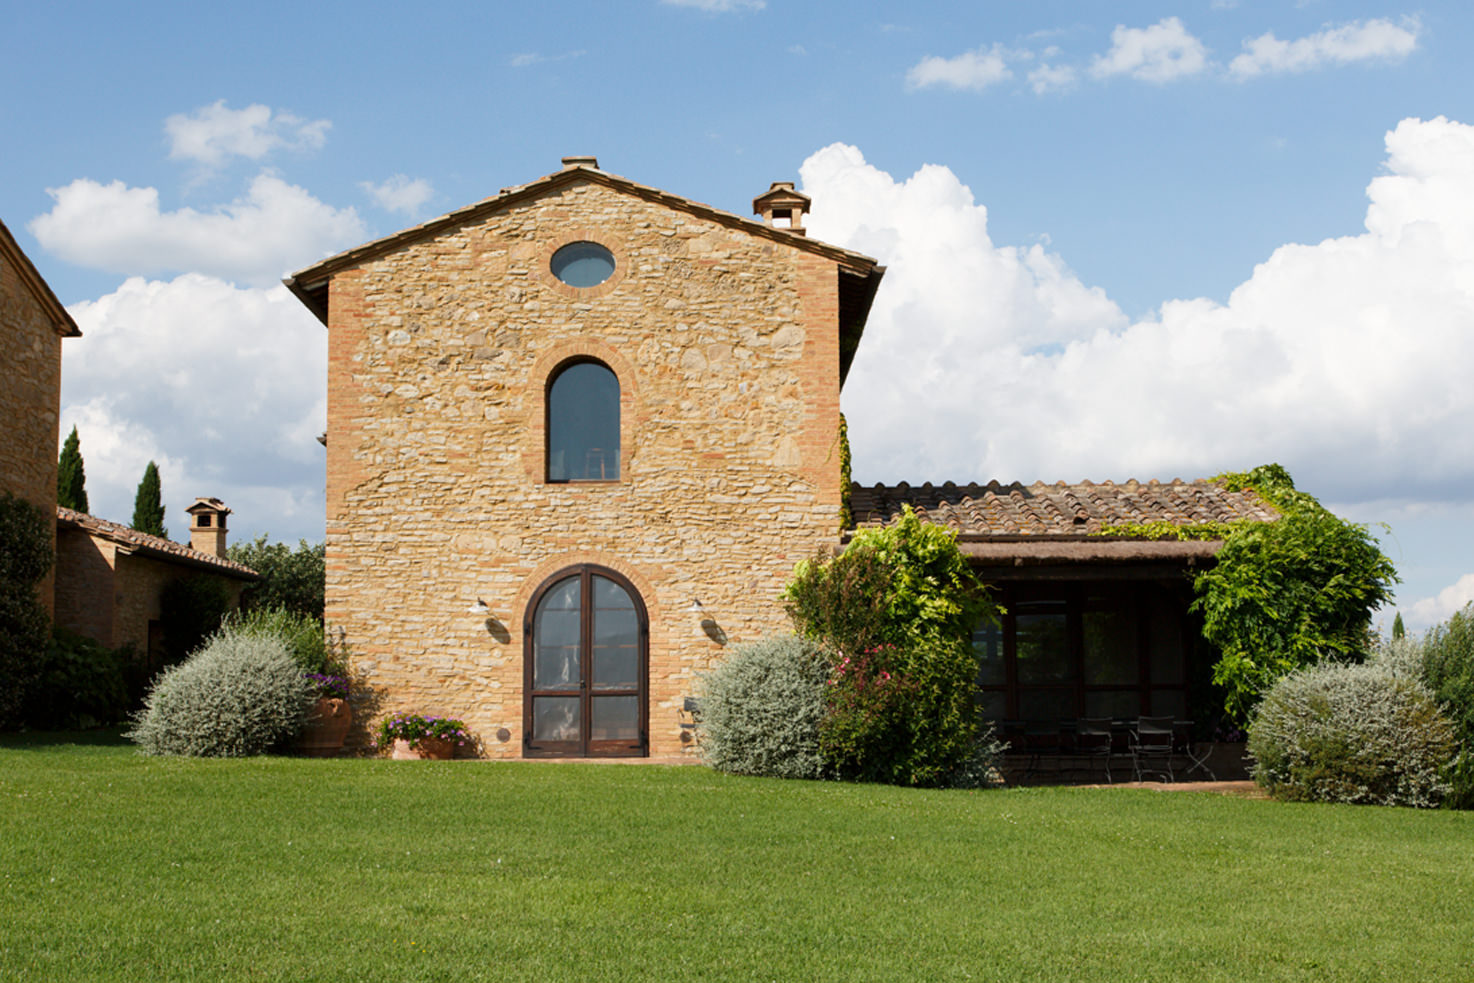 Farmhouse of Borgo Finocchieto